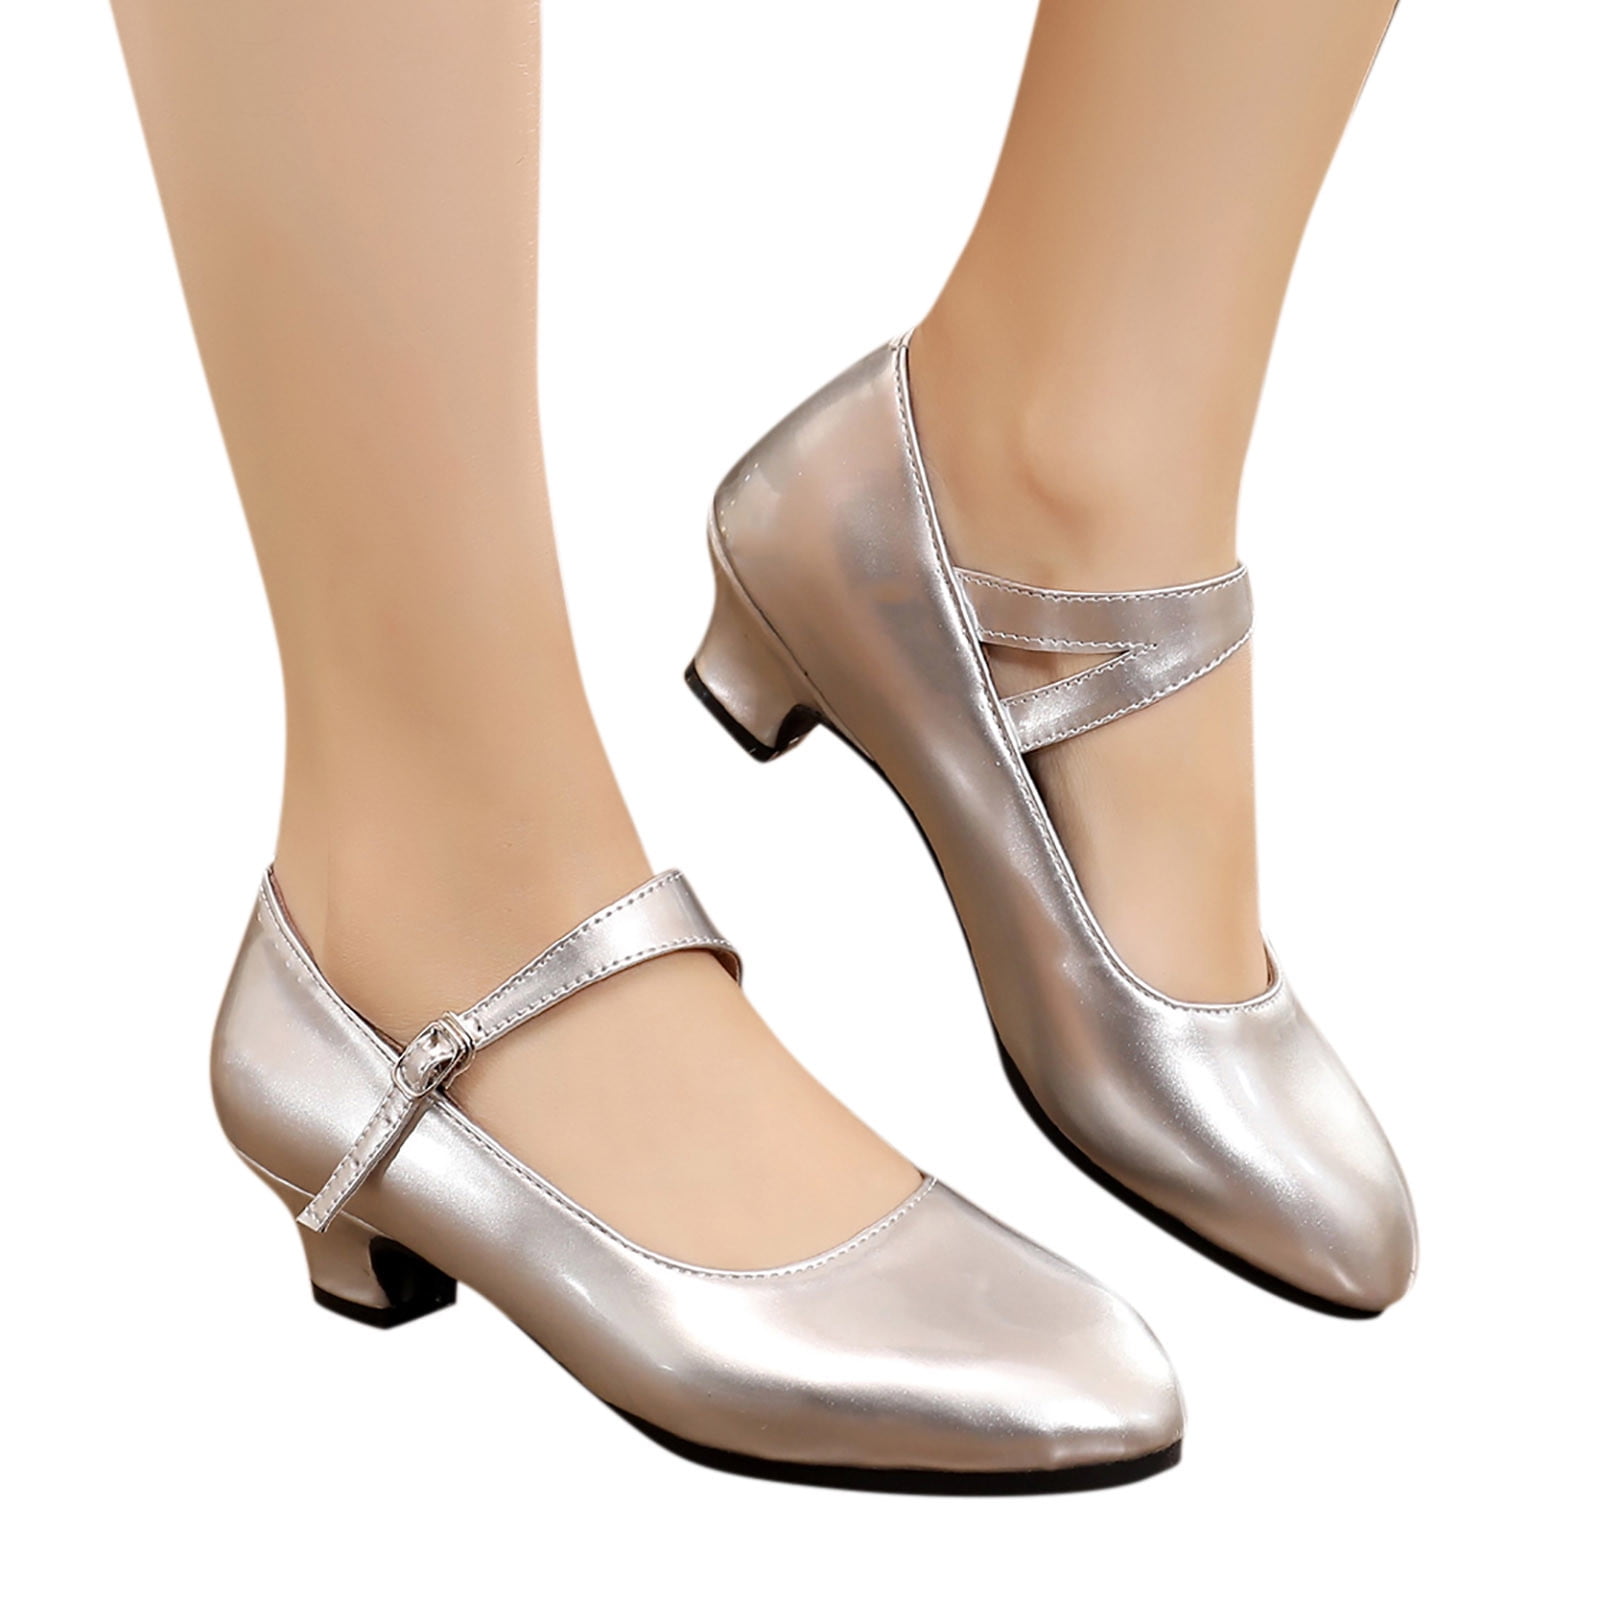 Women's Party Ballroom Latin Tango Modern Salsa Dance Heels Shoes Sandals US 5-9 